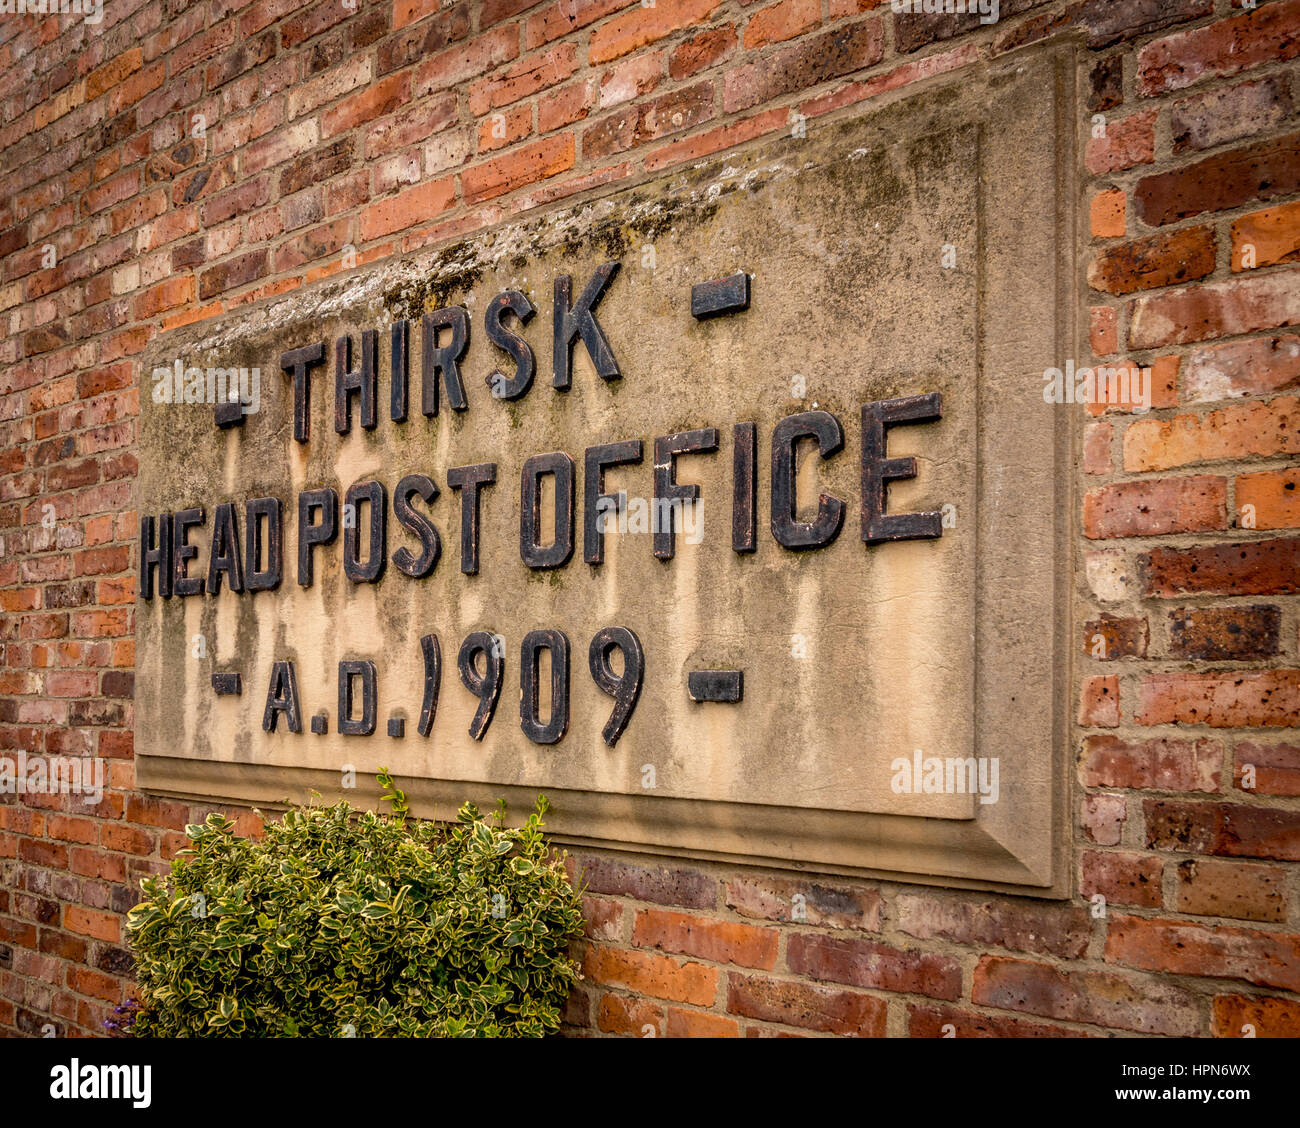 Thirsk Kopf Postamt steinerne Gedenktafel in Wand des Gebäudes, Thirsk, North Yorkshire, UK. Stockfoto